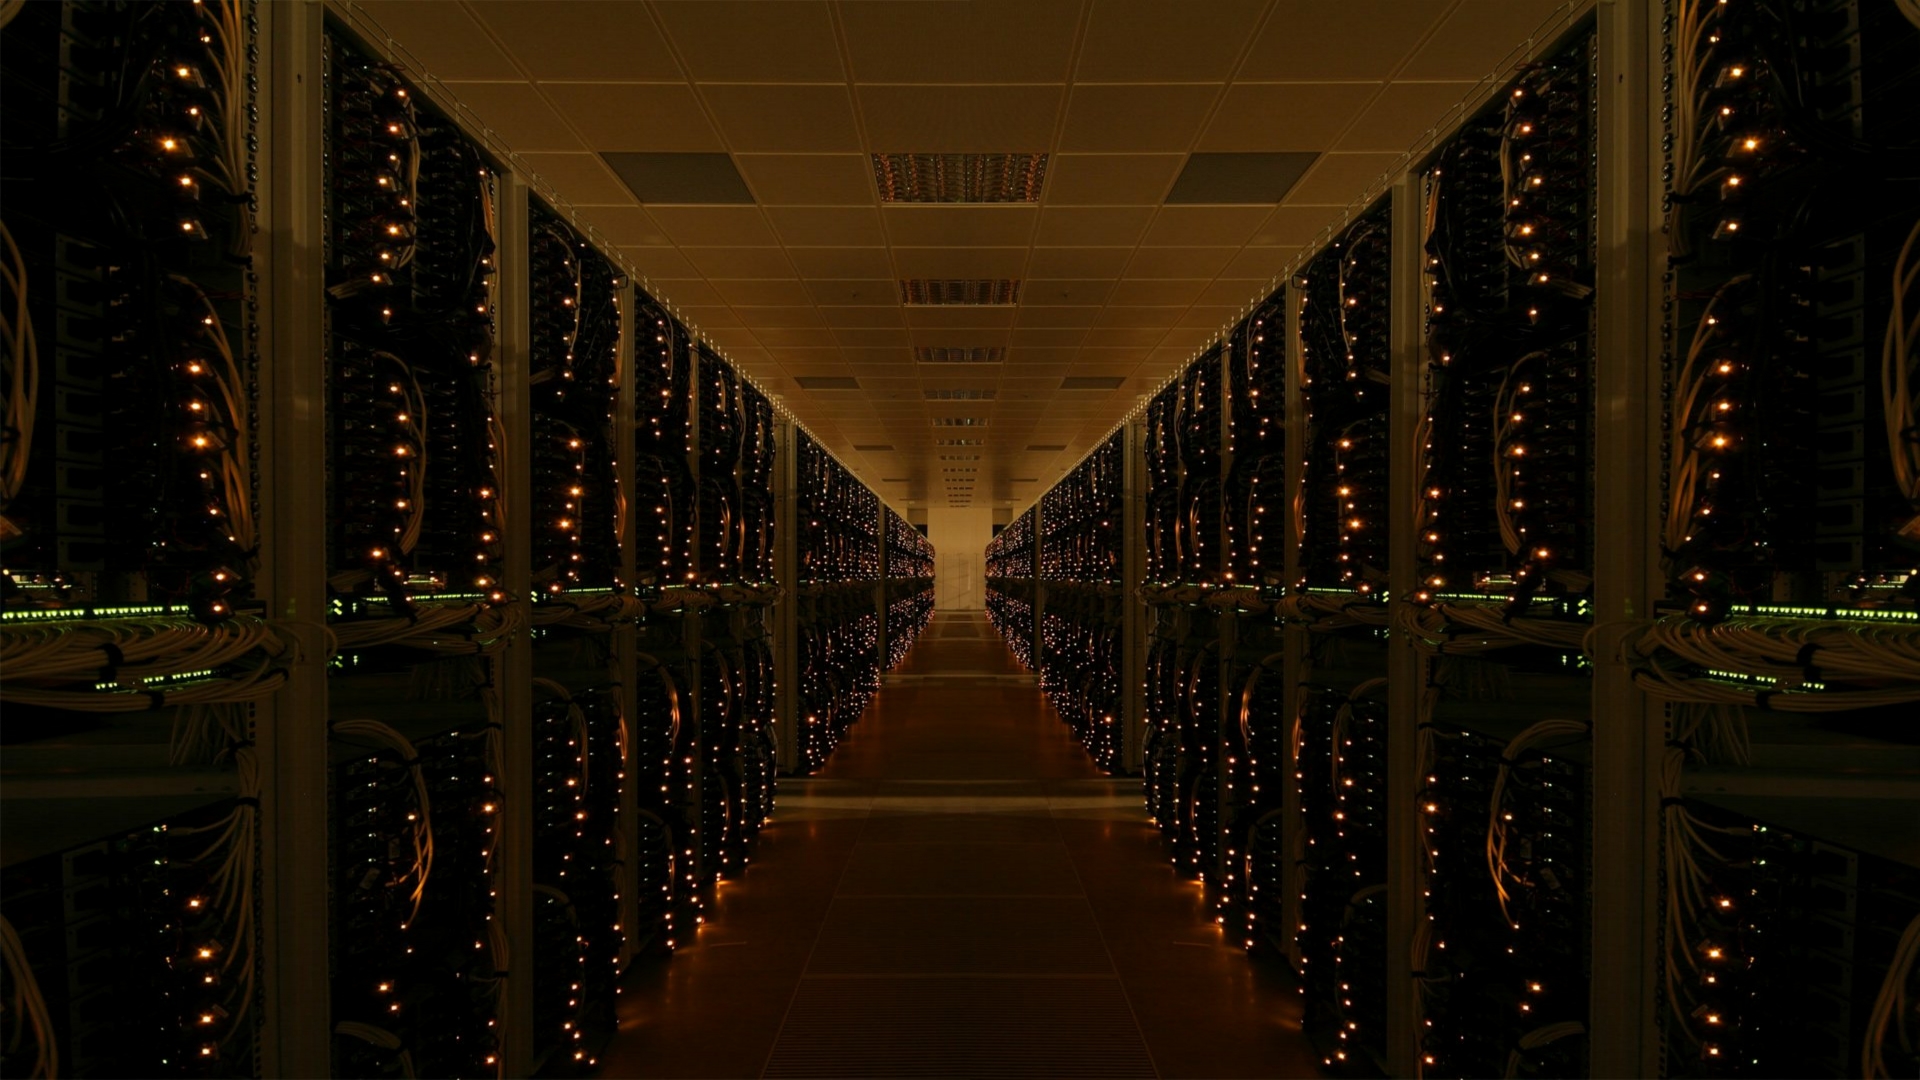 сервер, центр обработки данных - обои на рабочий стол